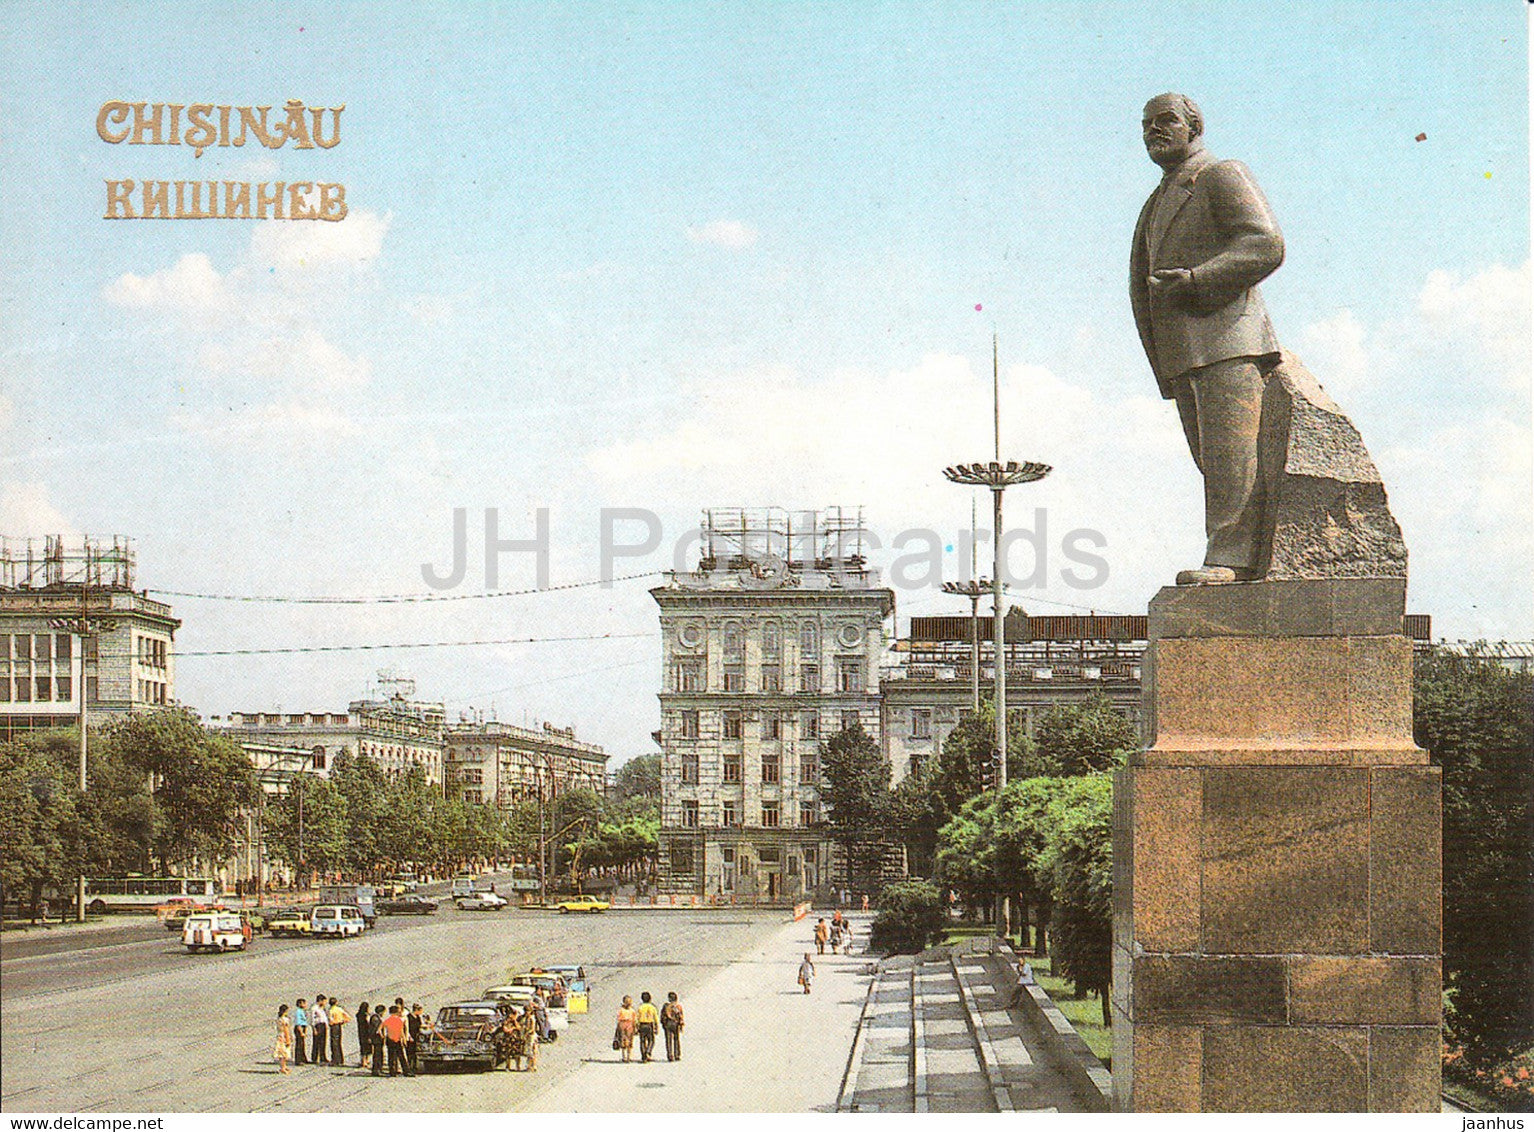 Chisinau - Kishinev - monument to Lenin on Victory square - 1989 - Moldova USSR - unused - JH Postcards